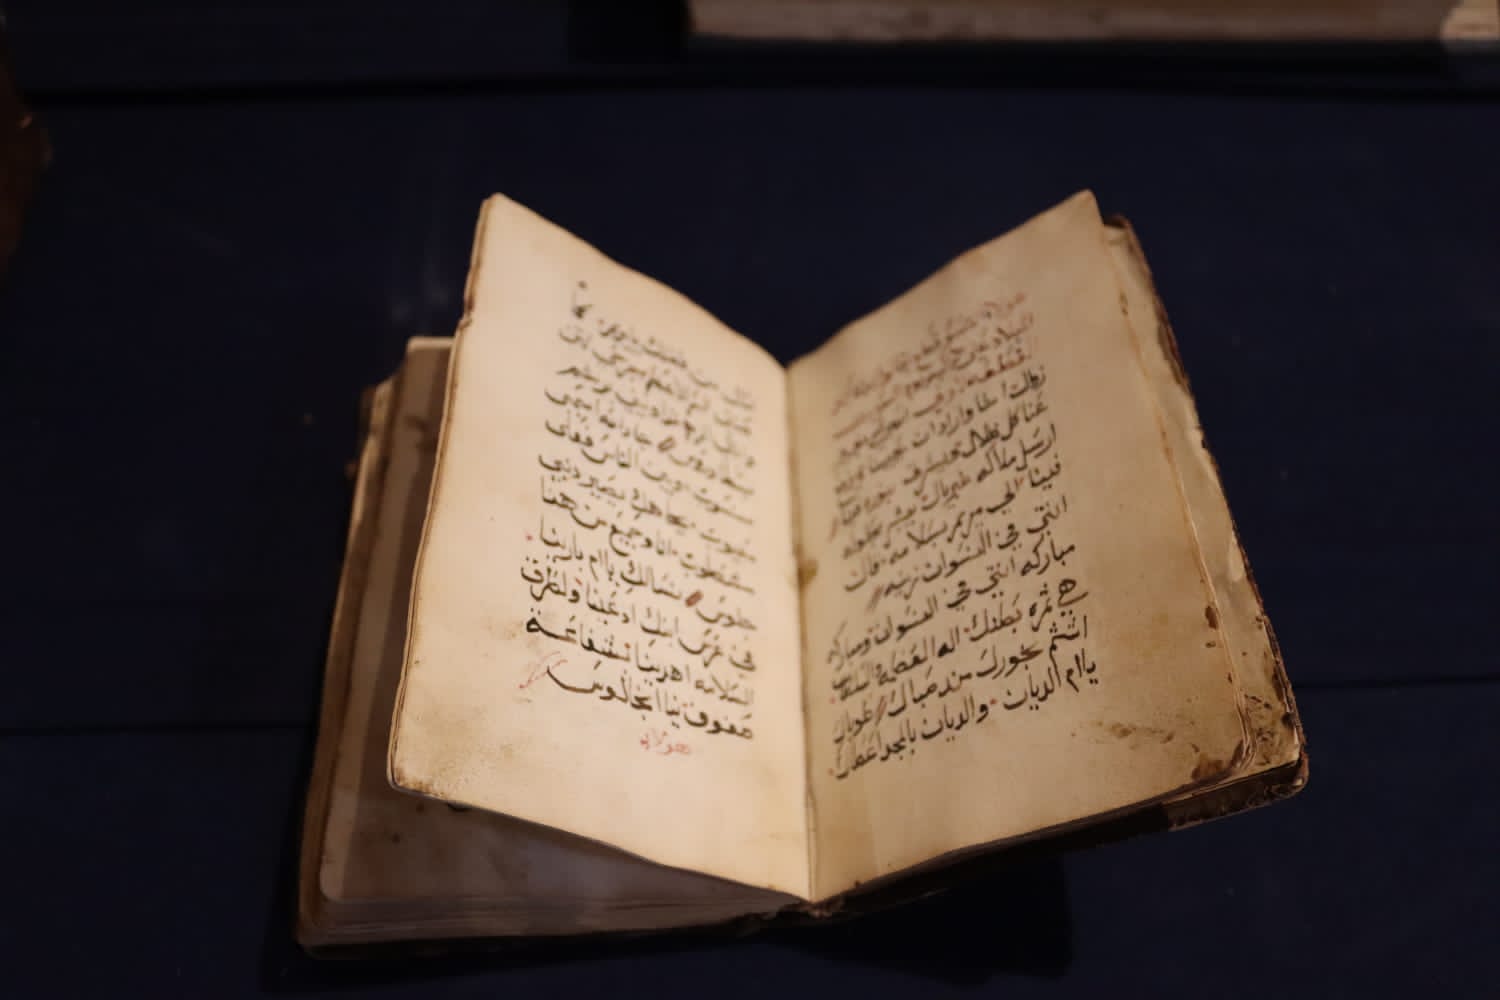   المتحف القبطي ينظم معرضاً أثرياً مؤقتاً بعنوان  قصة ميلاد عجيب 